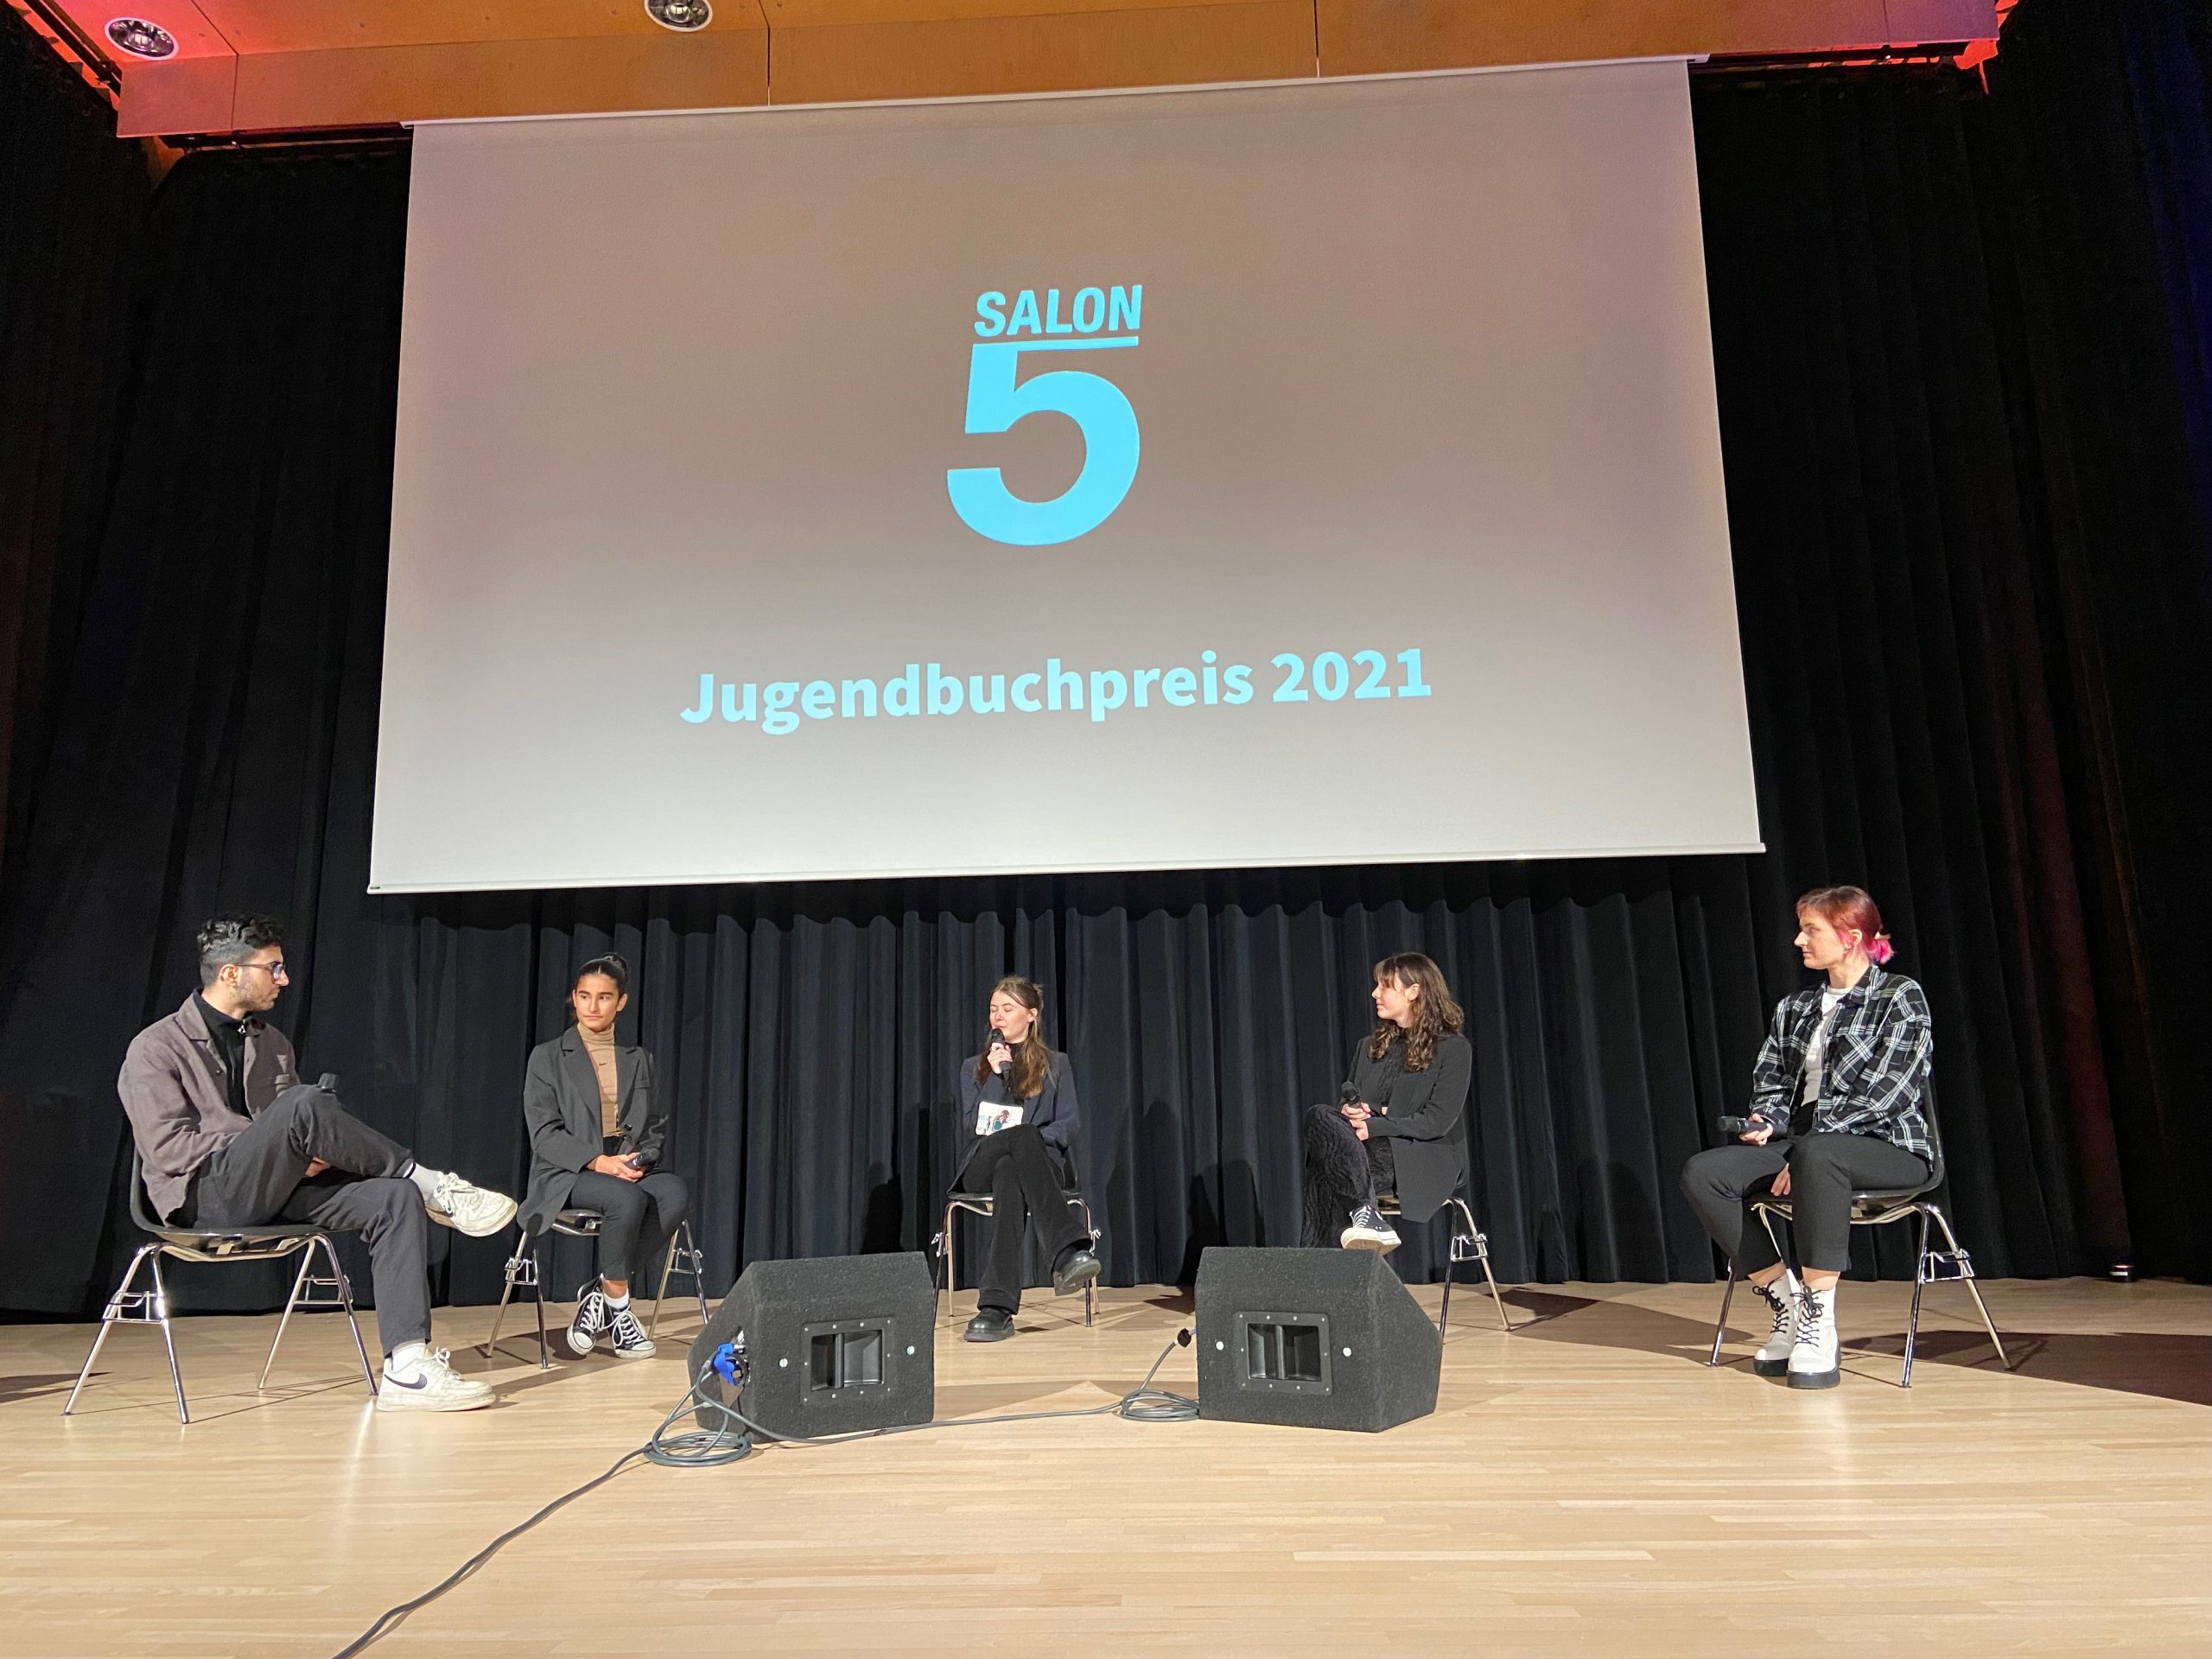 Salon5 Jugendbuchjury bei der Preisverleihung 2021 in Bottrop, Foto: Salon5